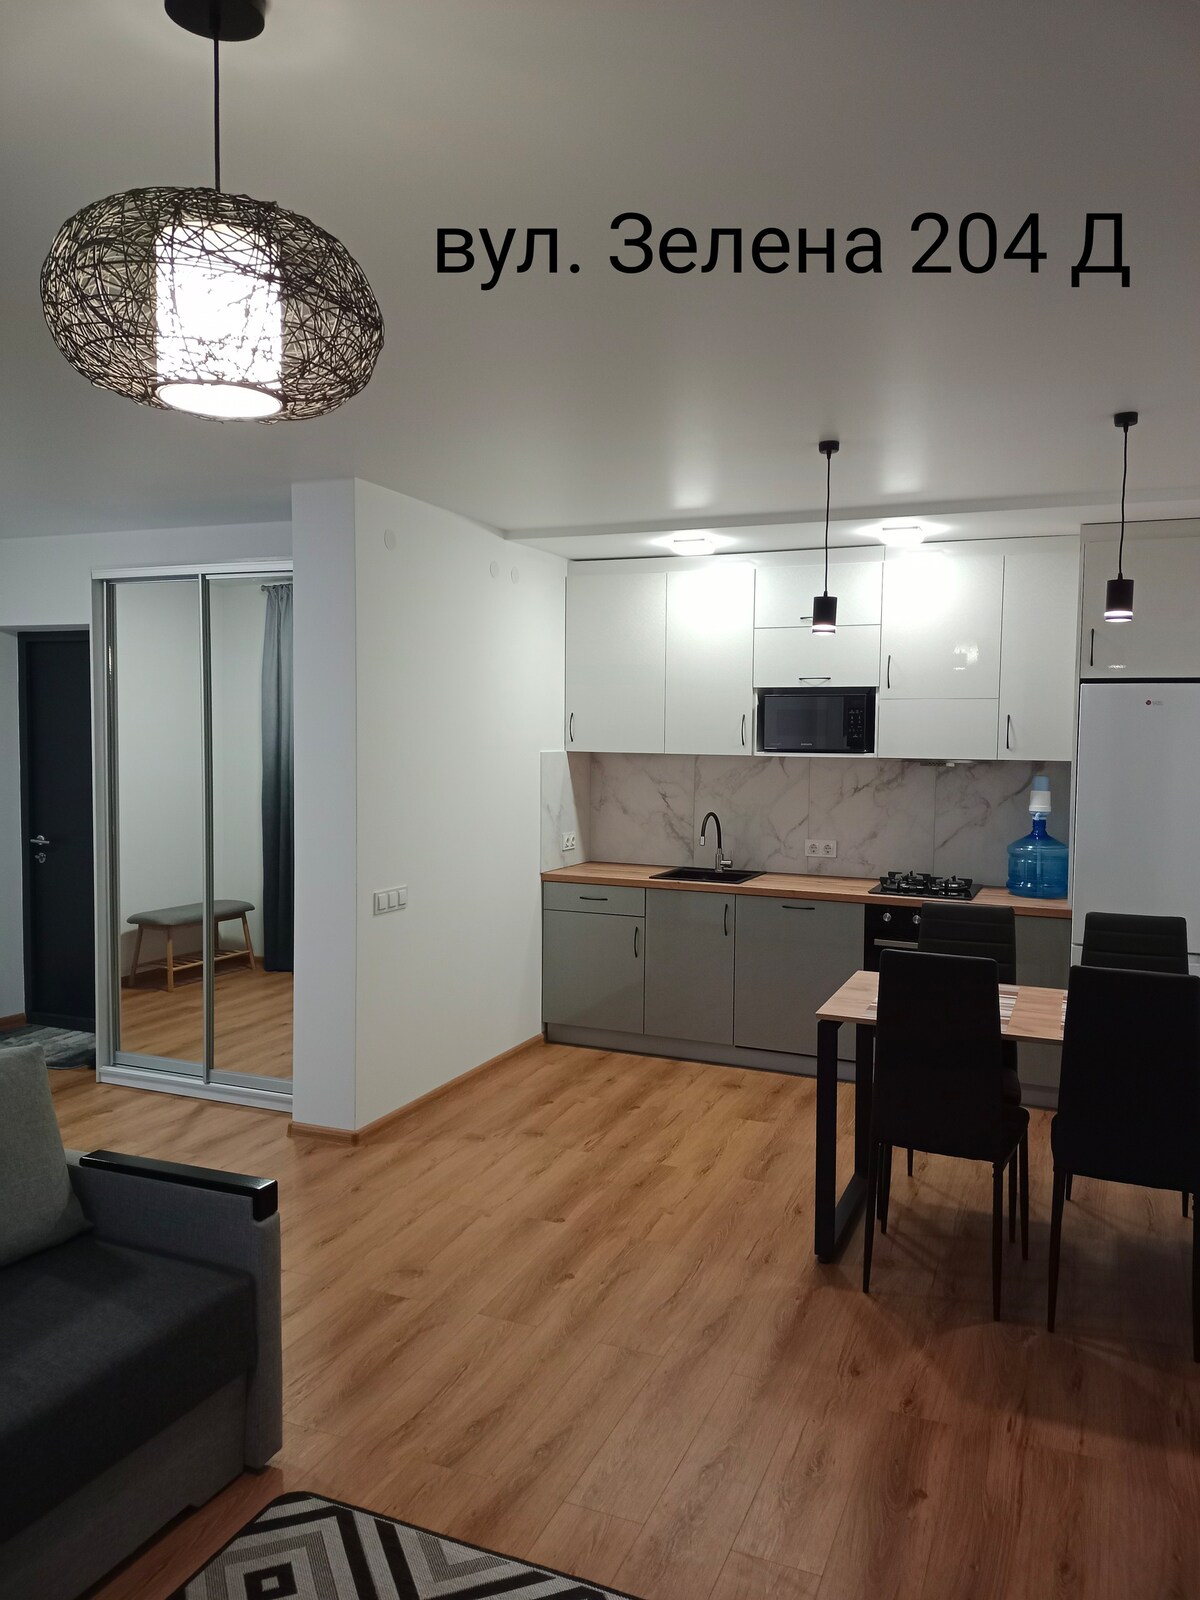 公寓Comfort Panorama, Zelena str. 204 D